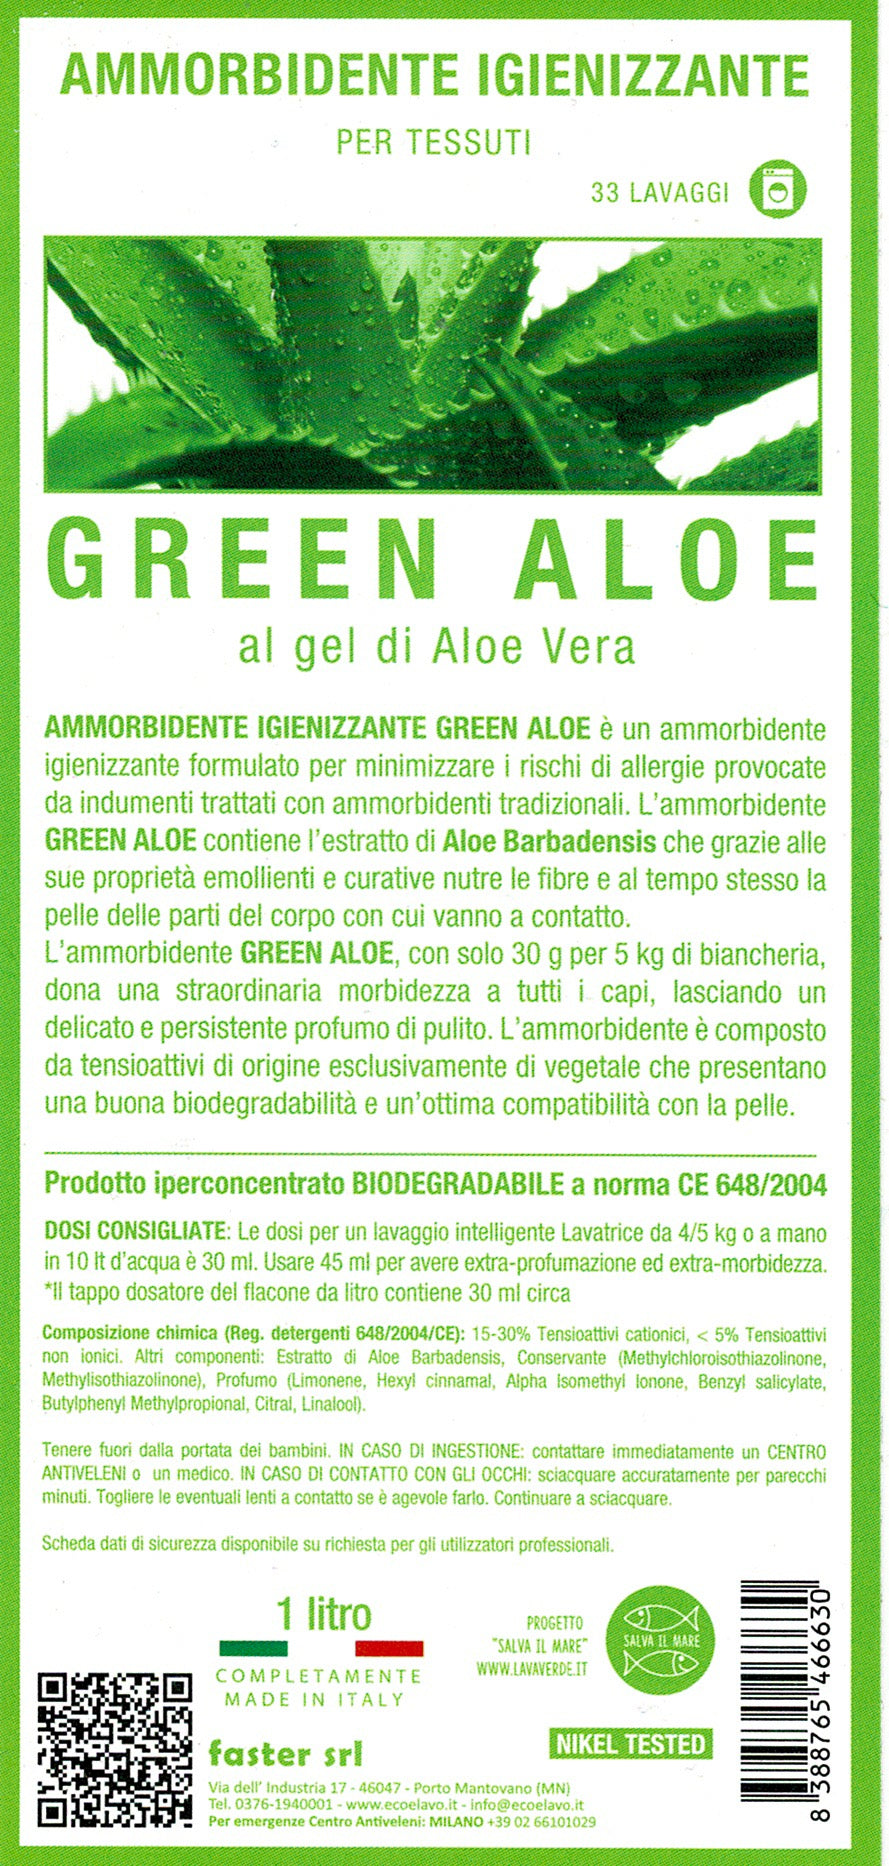 Ammorbidente Igienizzante Green Aloe LavaVerde - Vettovaglia.com